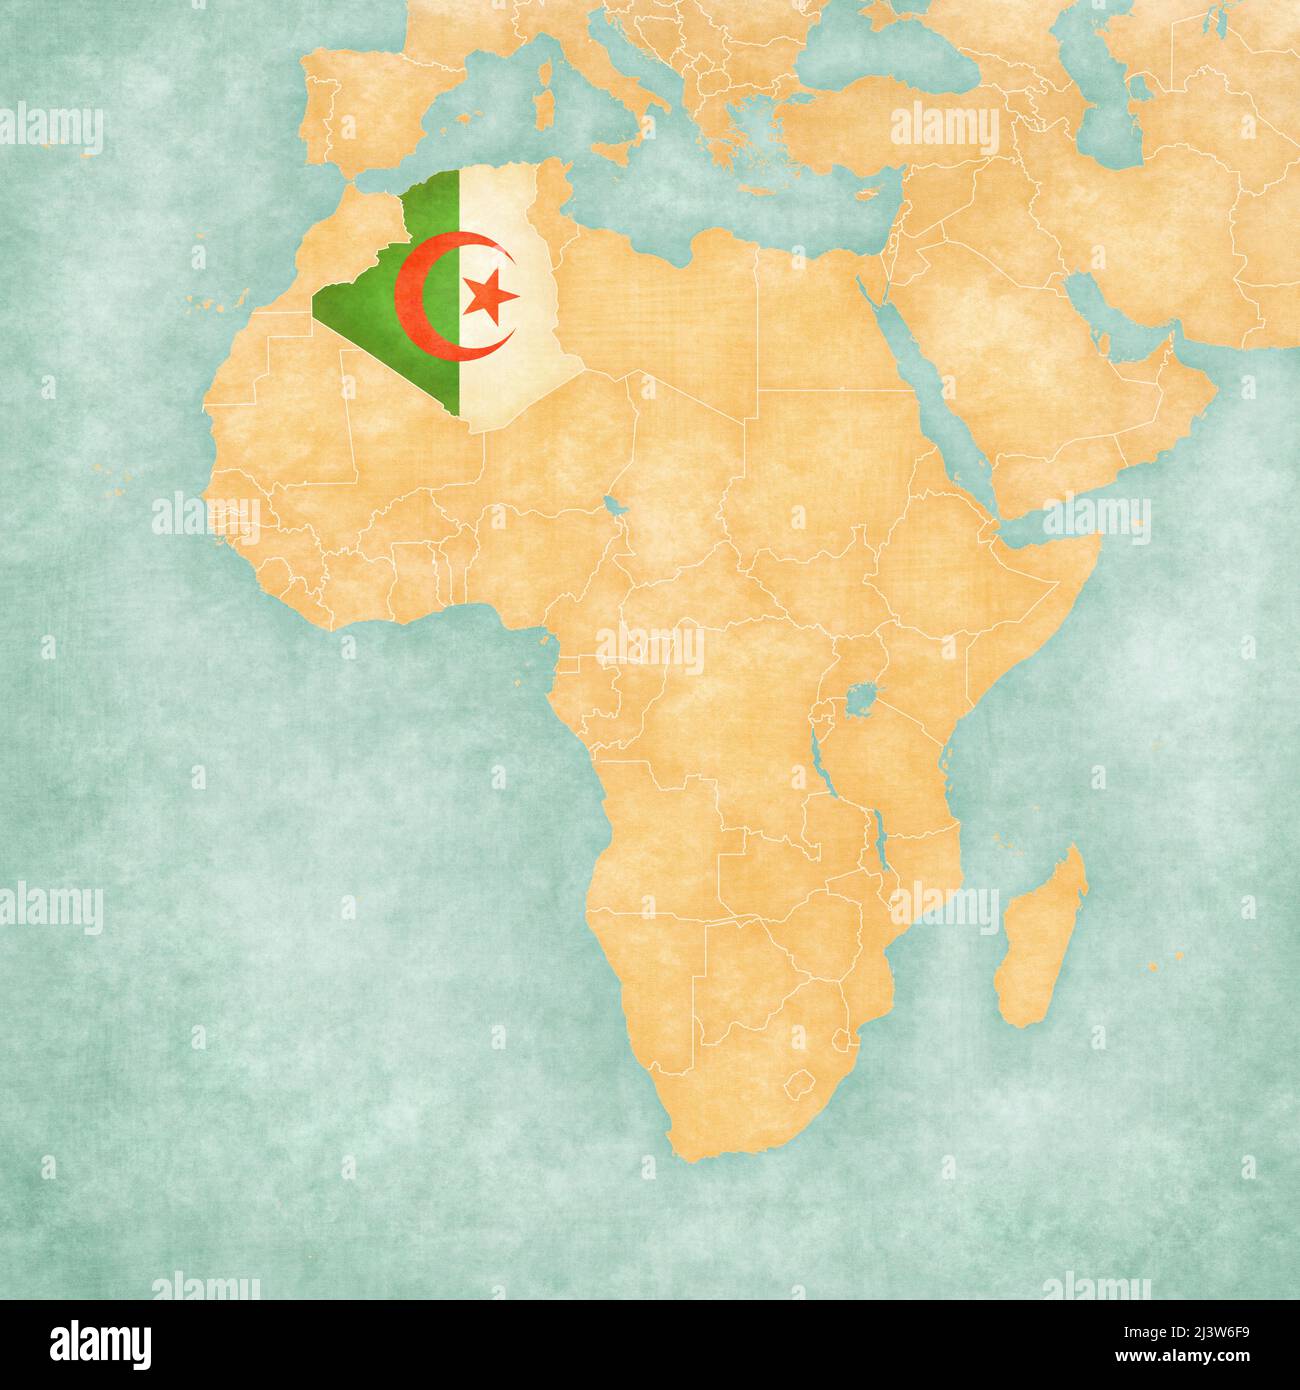 Algérie (drapeau algérien) sur la carte de l'Afrique. La carte est dans un style vintage d'été et d'humeur ensoleillée. La carte a un grunge doux et une atmosphère vintage, comme Banque D'Images